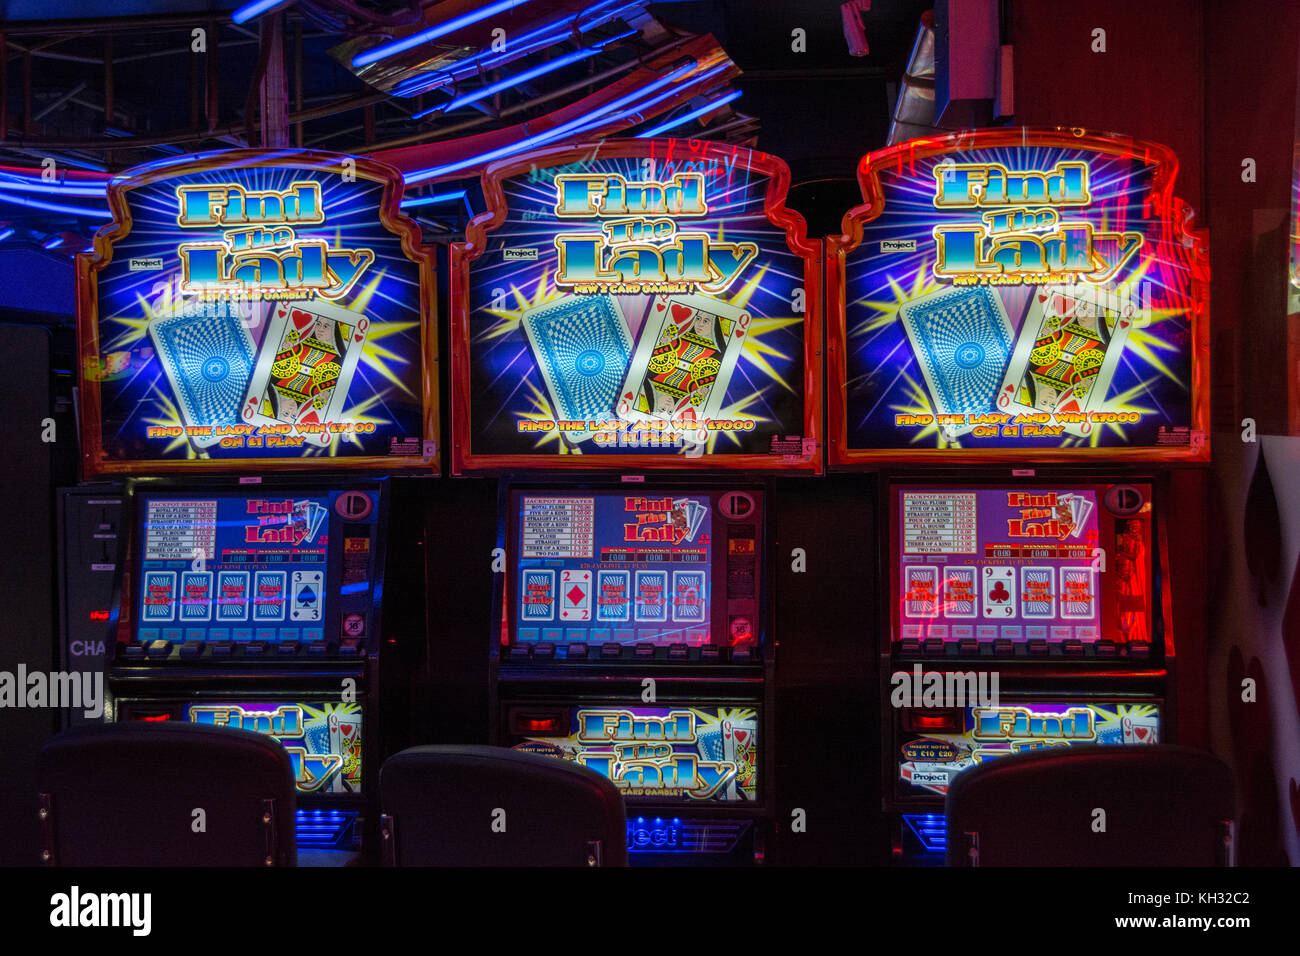 Trova le slot machine Lady in una sala giochi a Chinatown nel West End di Londra, Inghilterra, Regno Unito Foto Stock